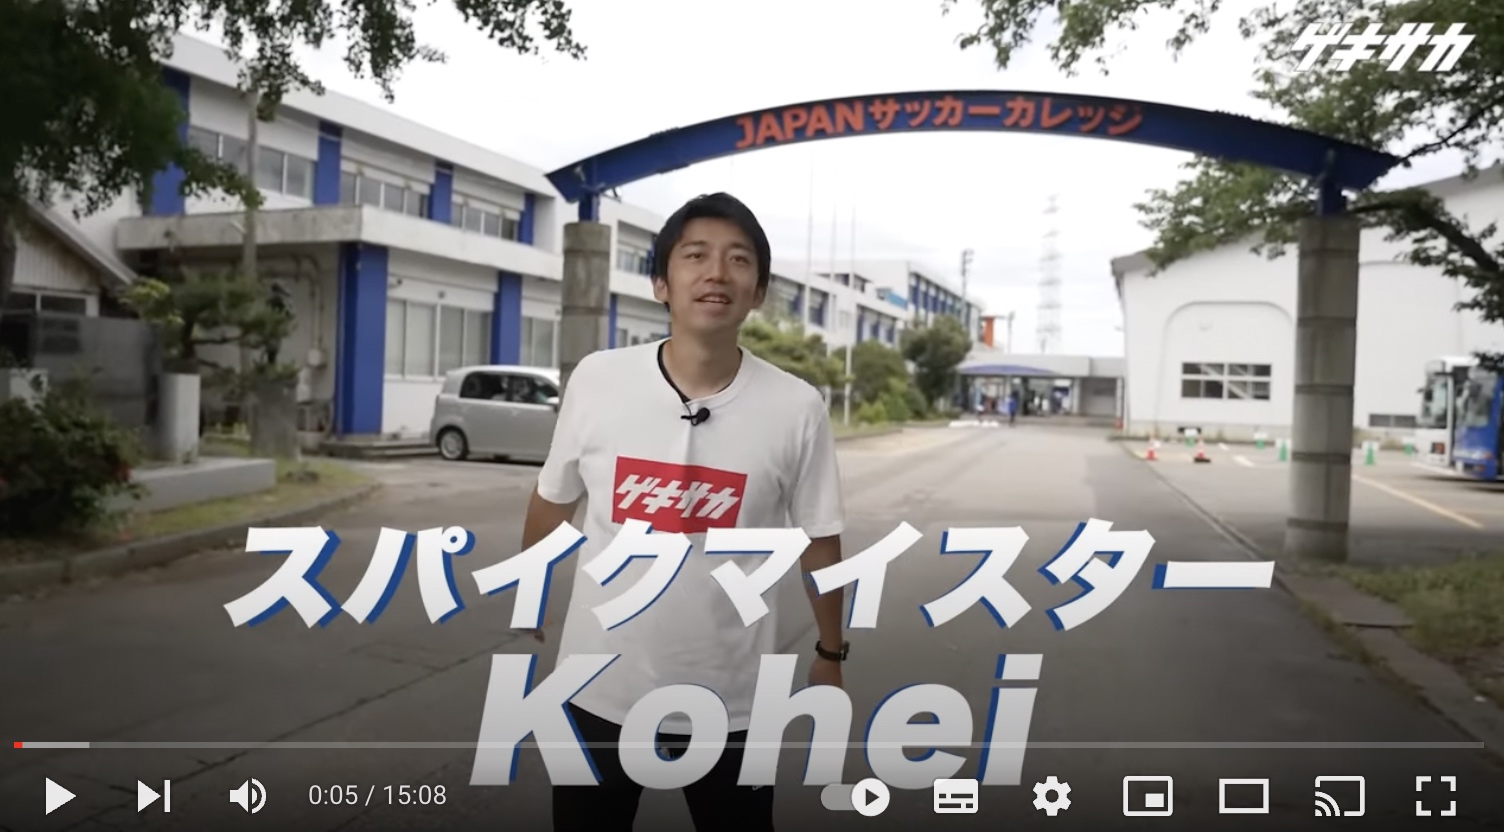 「ゲキサカ」のYouTubeチャンネルで紹介された、日本で唯一のサッカー総合専門学校「JAPANサッカーカレッジ」の動画に多くの反響が！